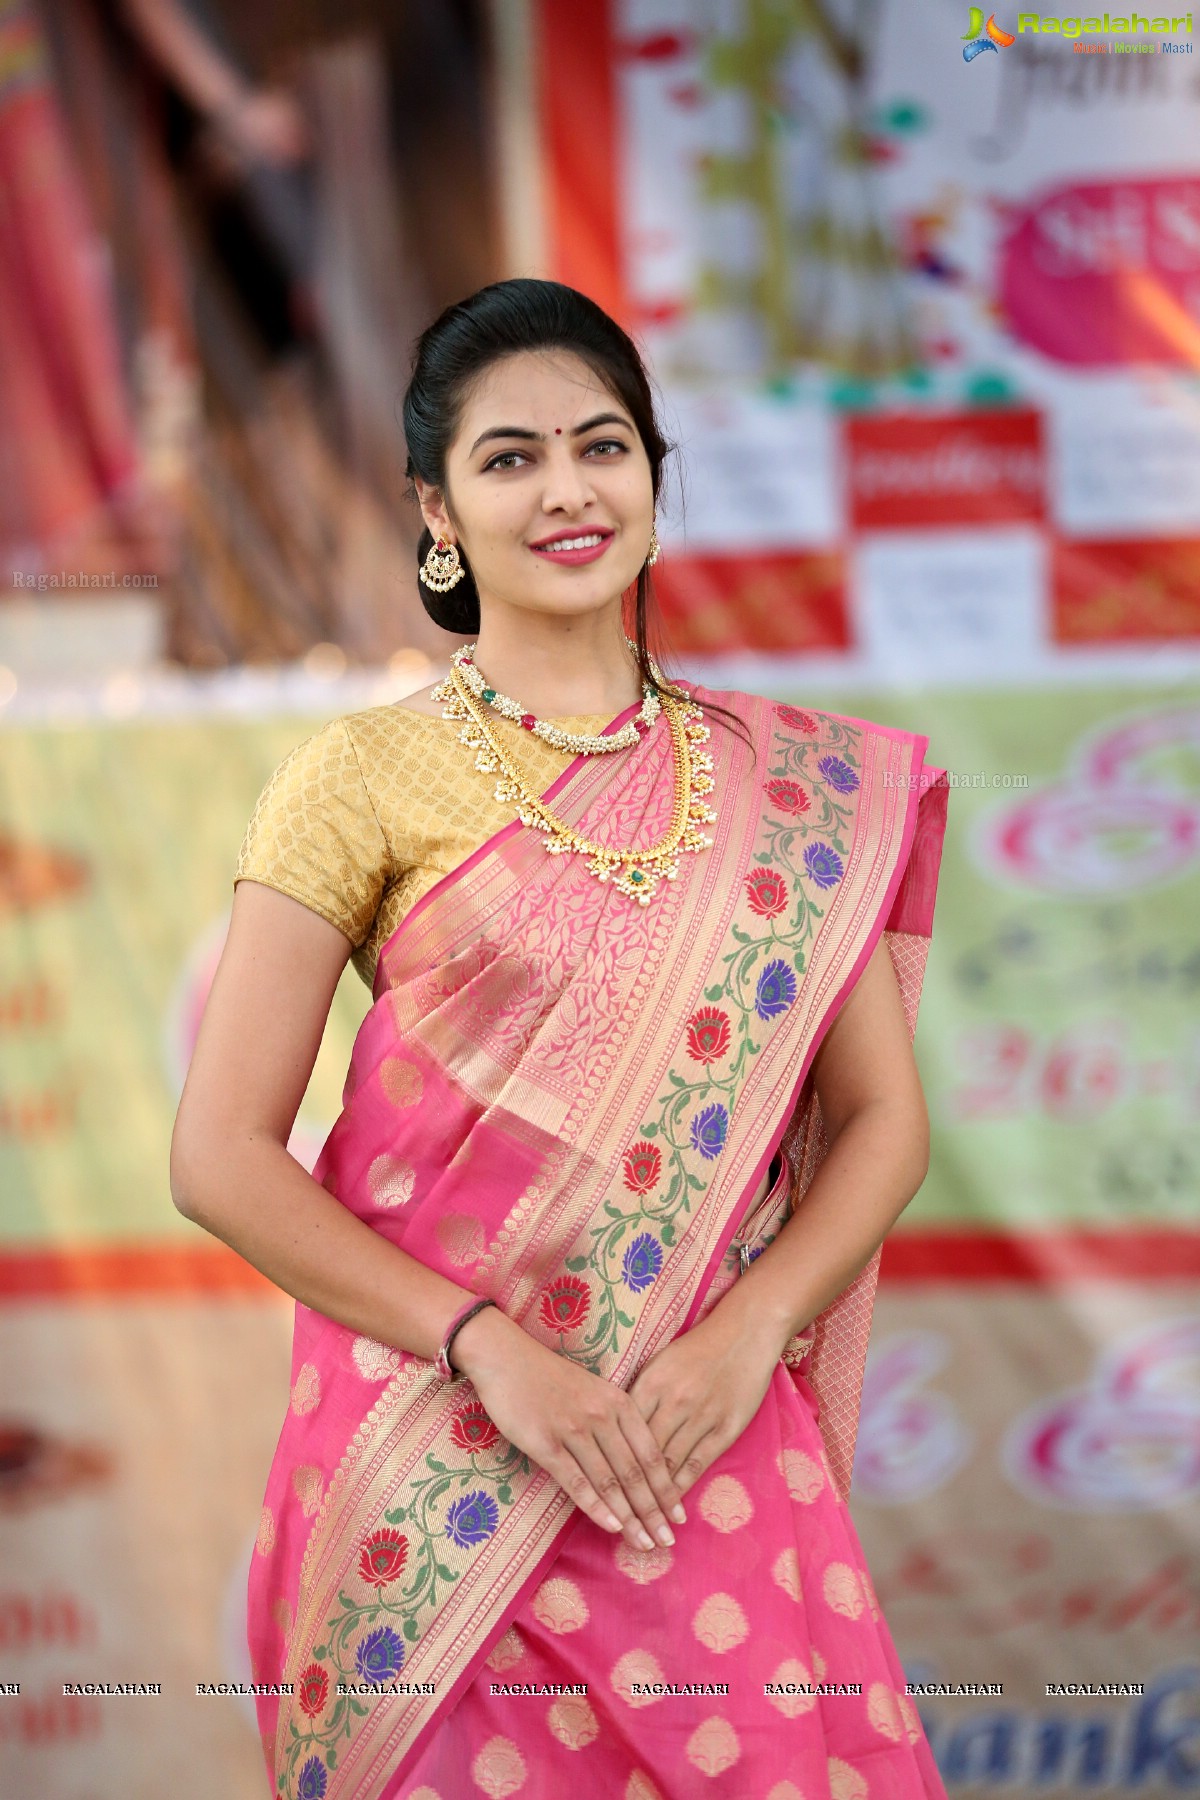 Silk & Cotton Expo ‘100th Exhibition’ Pre-Celebrations at Sri Satya Sai Nigamagamam